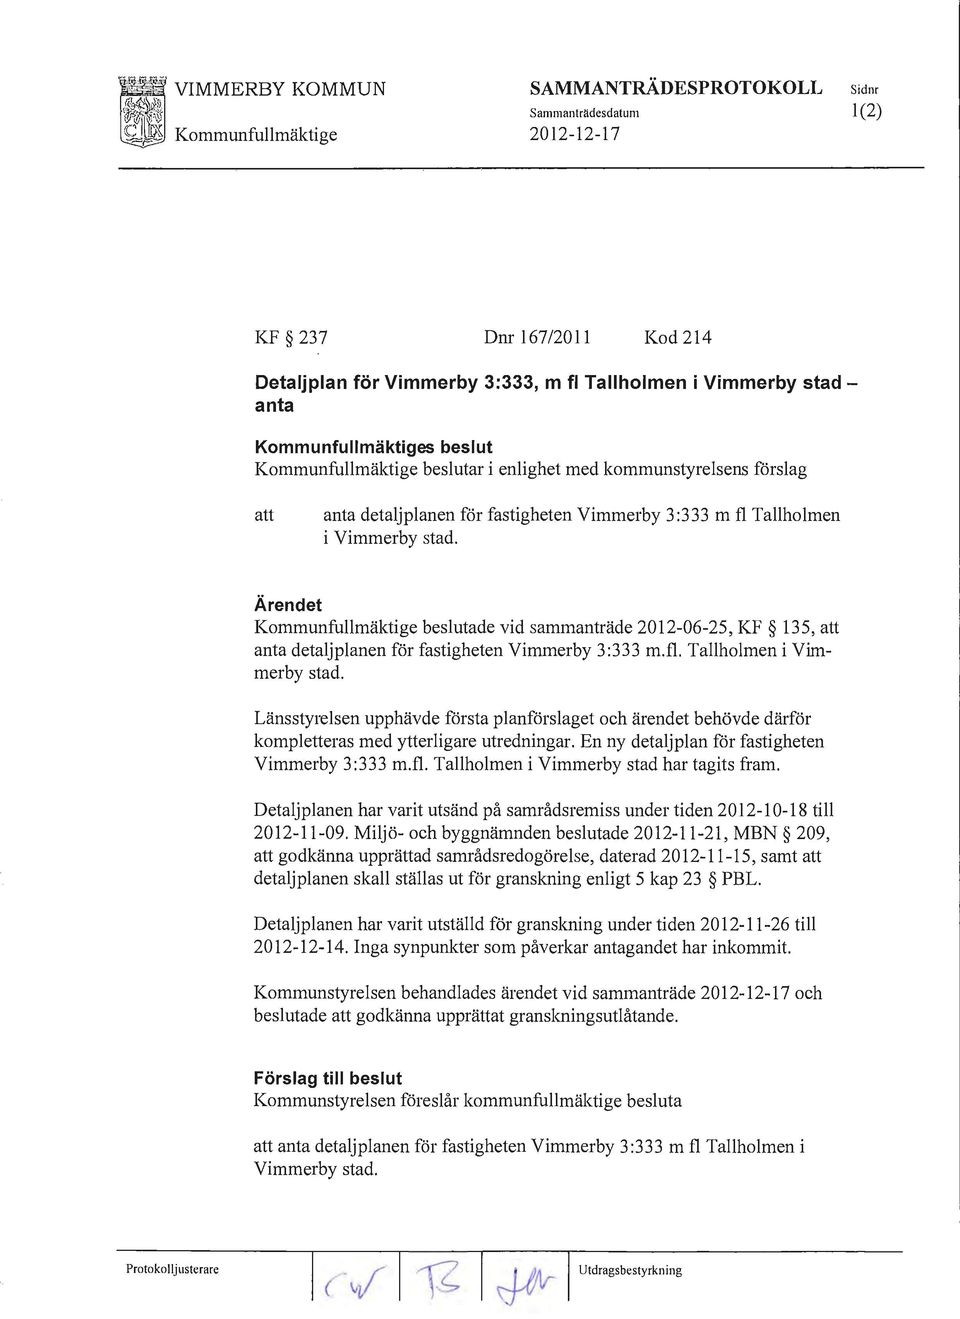 Ärendet Kommunfullmäktige beslutade vid sammanträde 2012-06-25, KF 135, att anta detaljplanen för fastigheten Vimmerby 3:333 m. fl. Tallholmen i Vimmerby stad.